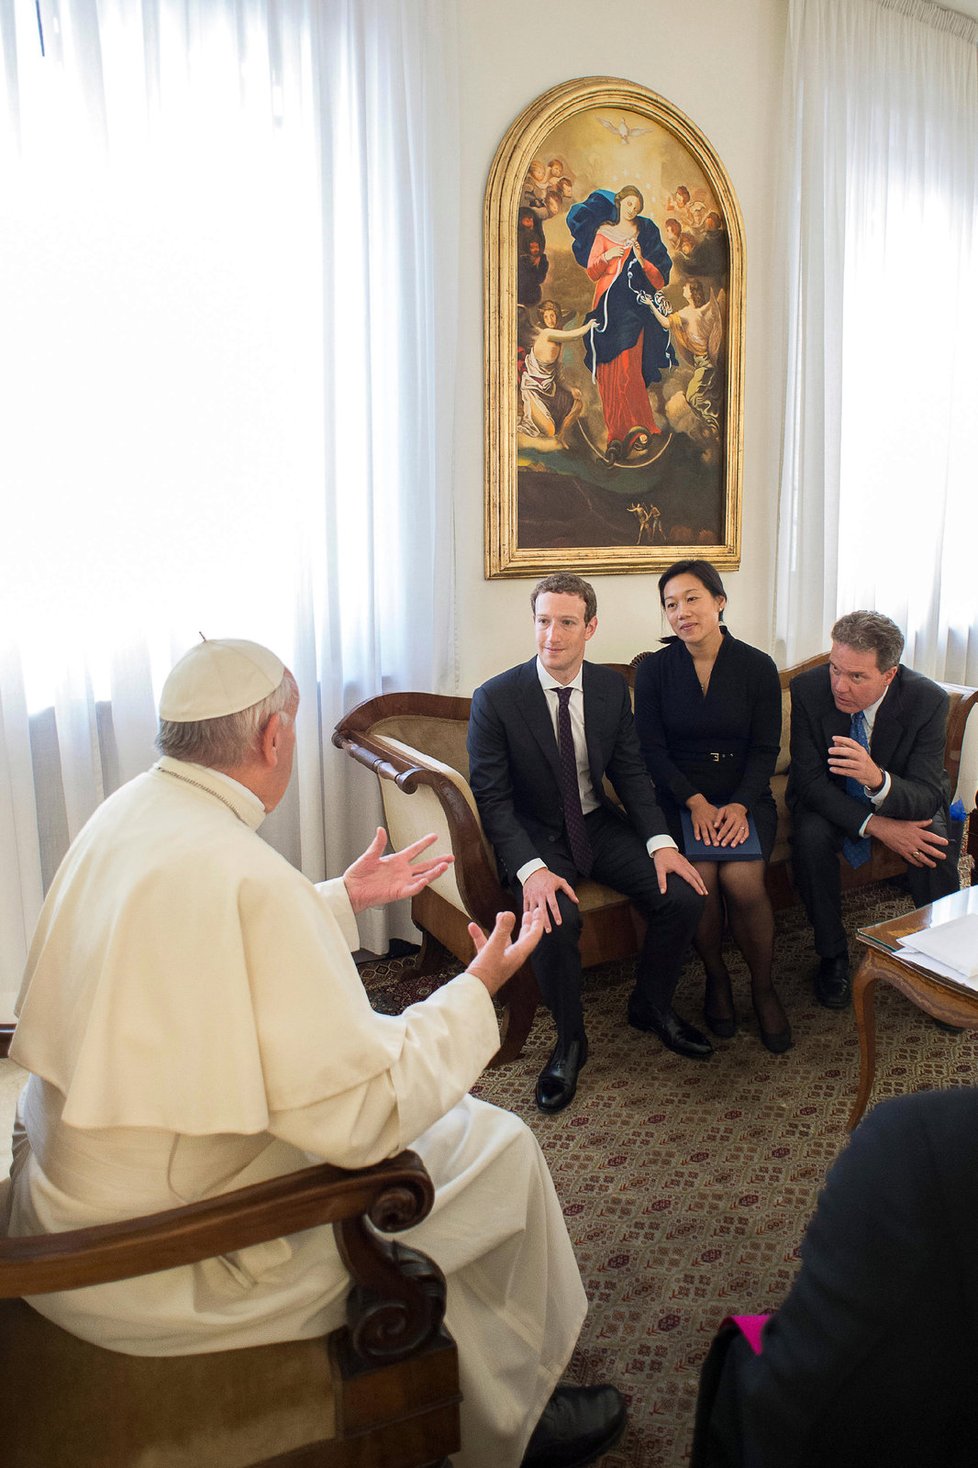 Šéfa Facebooku a jeho manželku přijal papež.